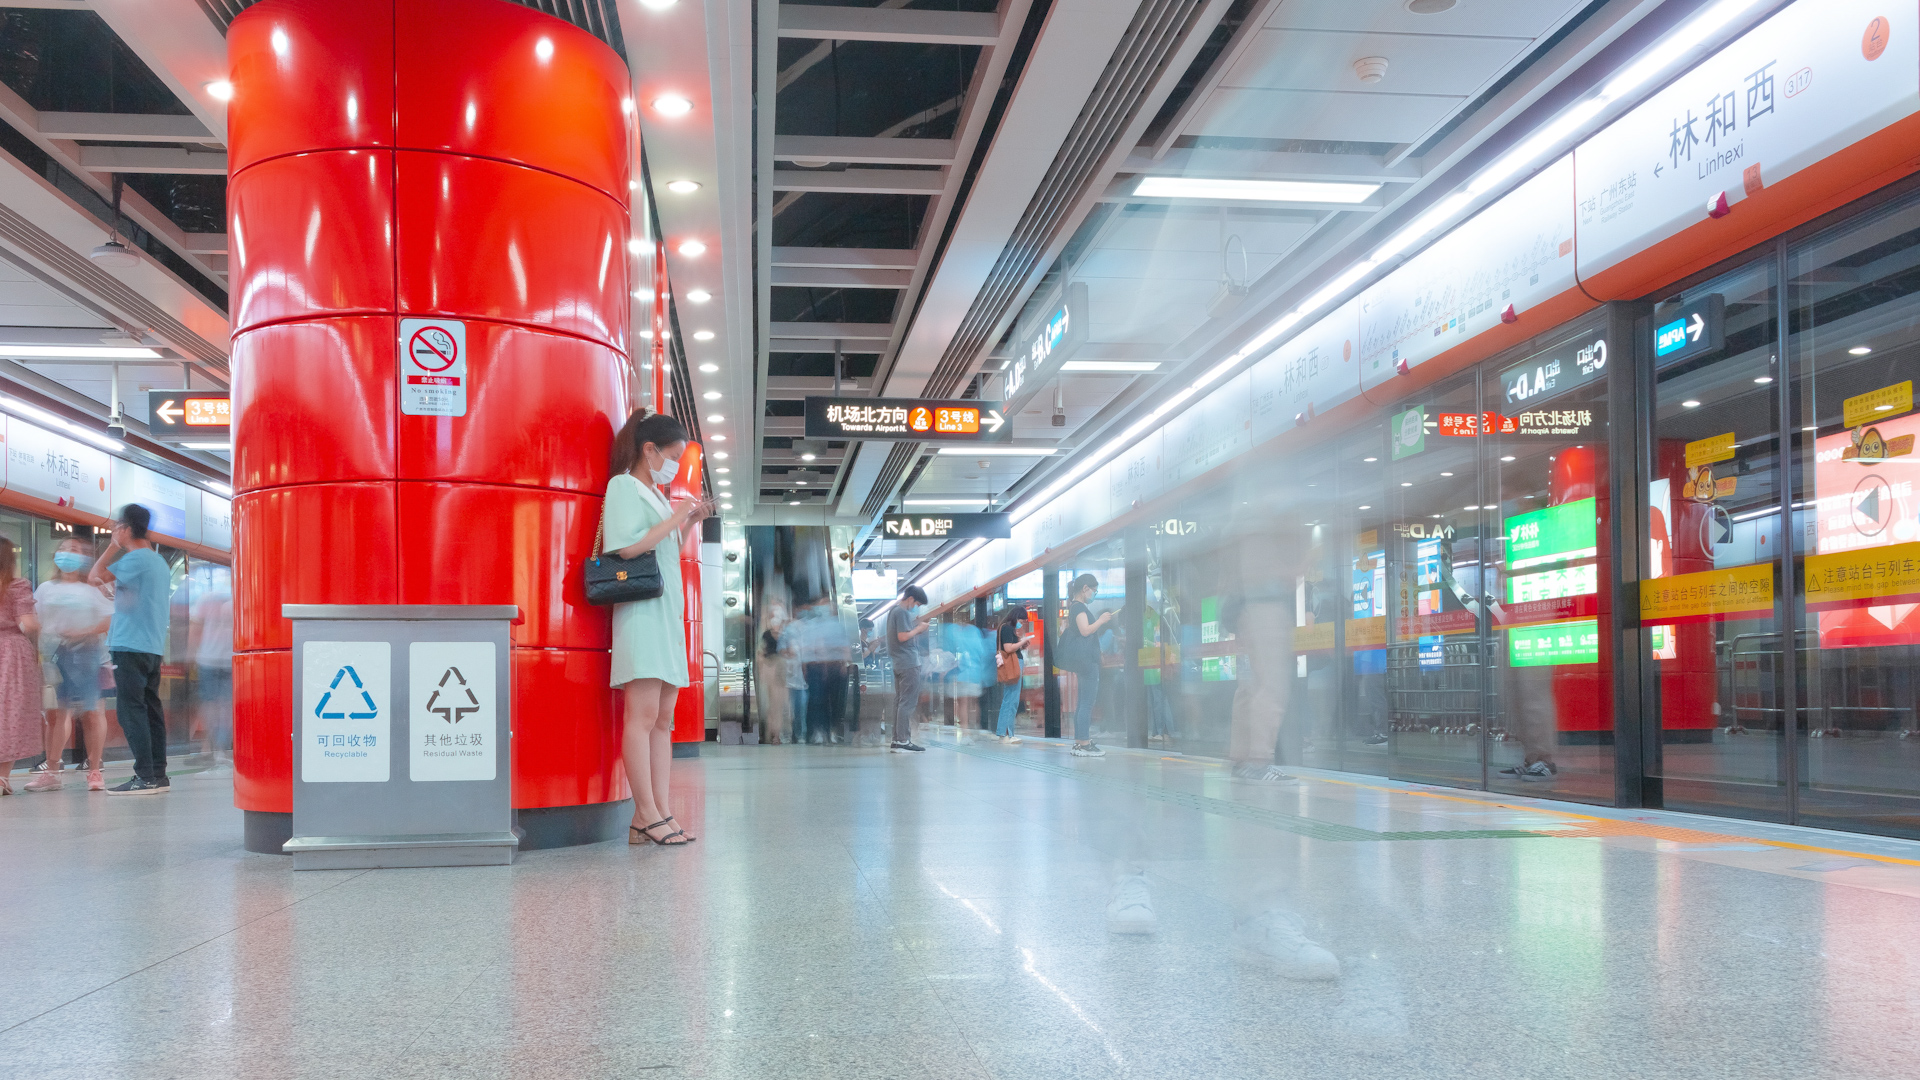 搭上“友城号” 地铁看粤剧，地铁APM线林和西站被打造成“友城站”